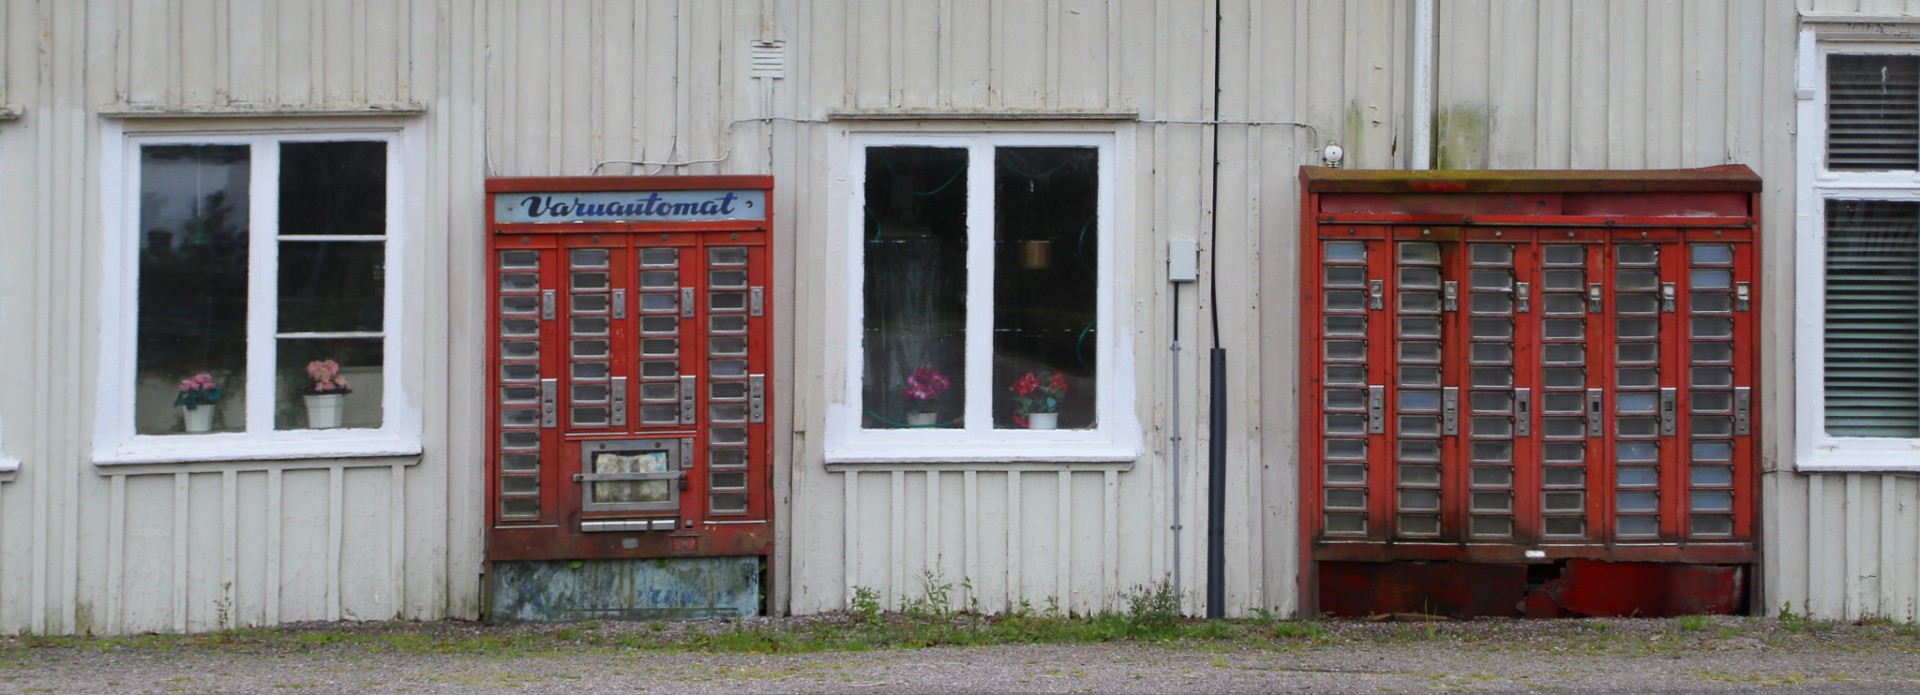 Varuautomaterna är gammal svensk kultur